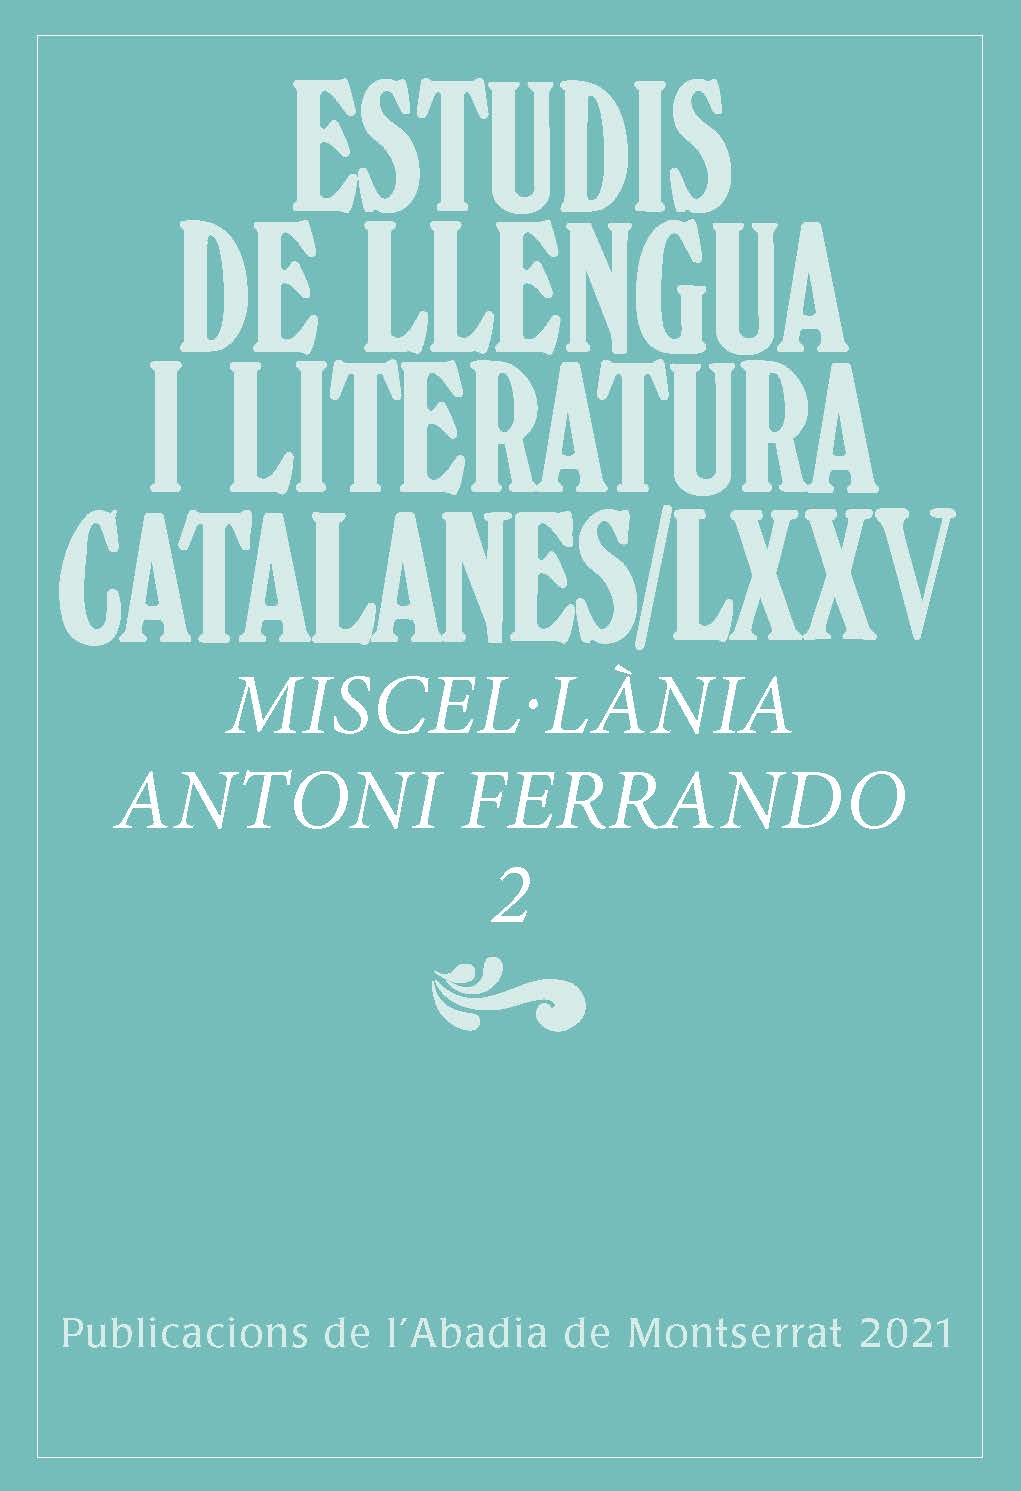 Imagen de portada del libro Miscel·lània Antoni Ferrando / 2